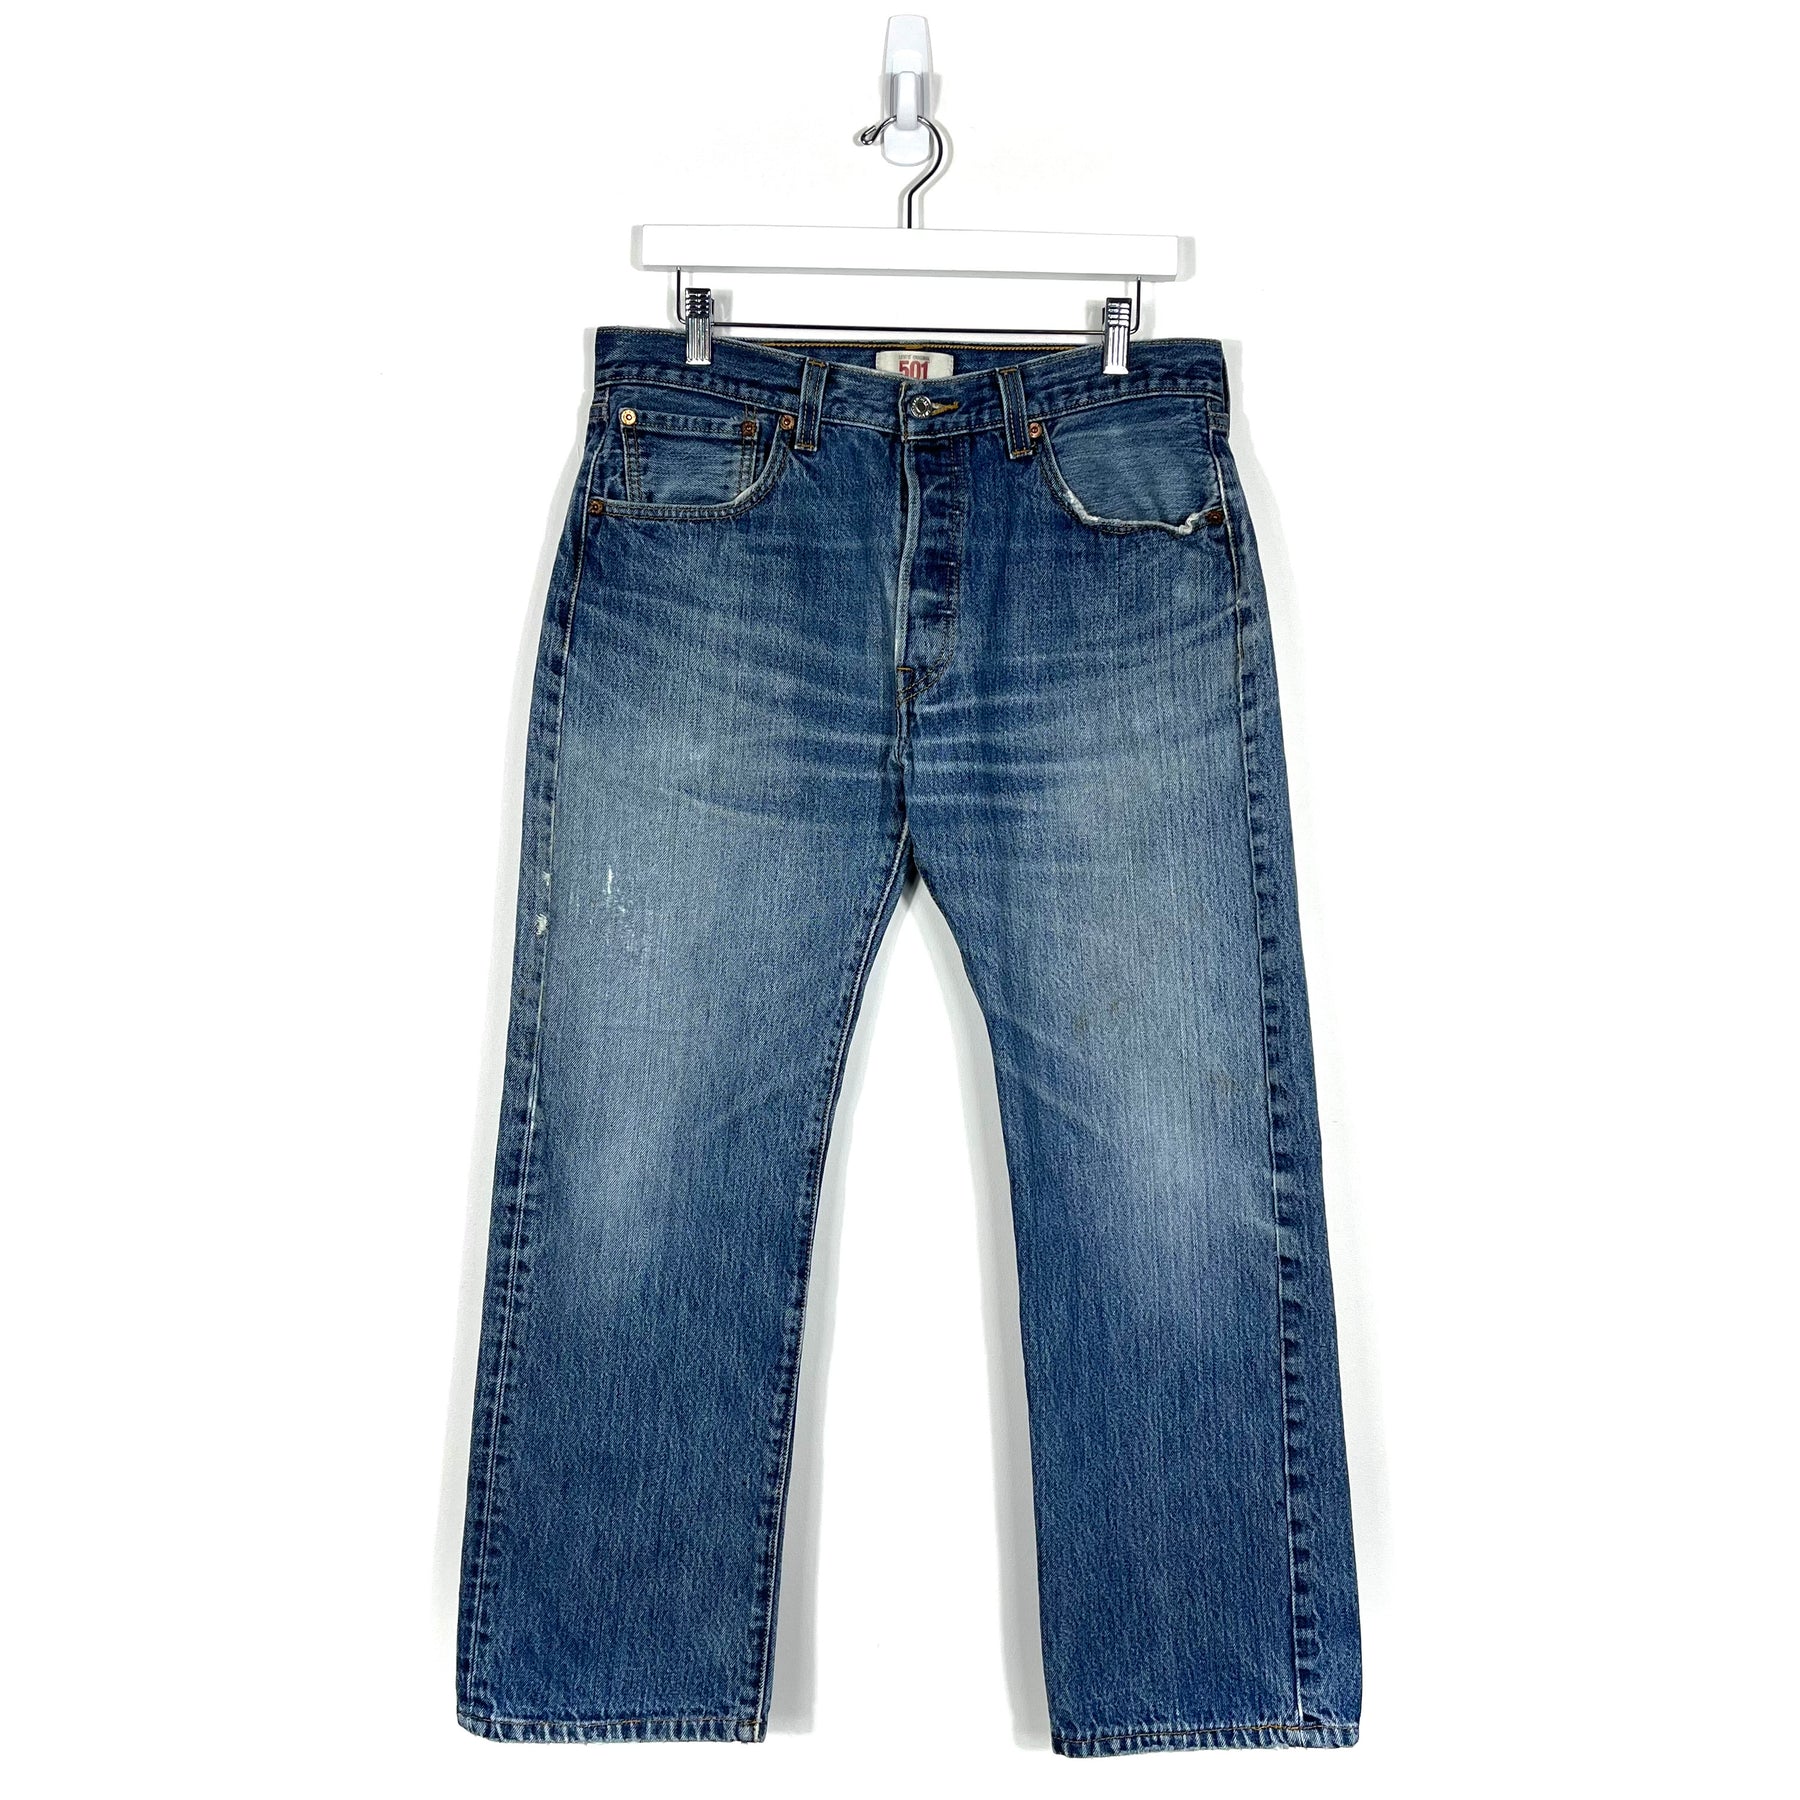 Vintage Levis 501 Jeans - Men's 32/27